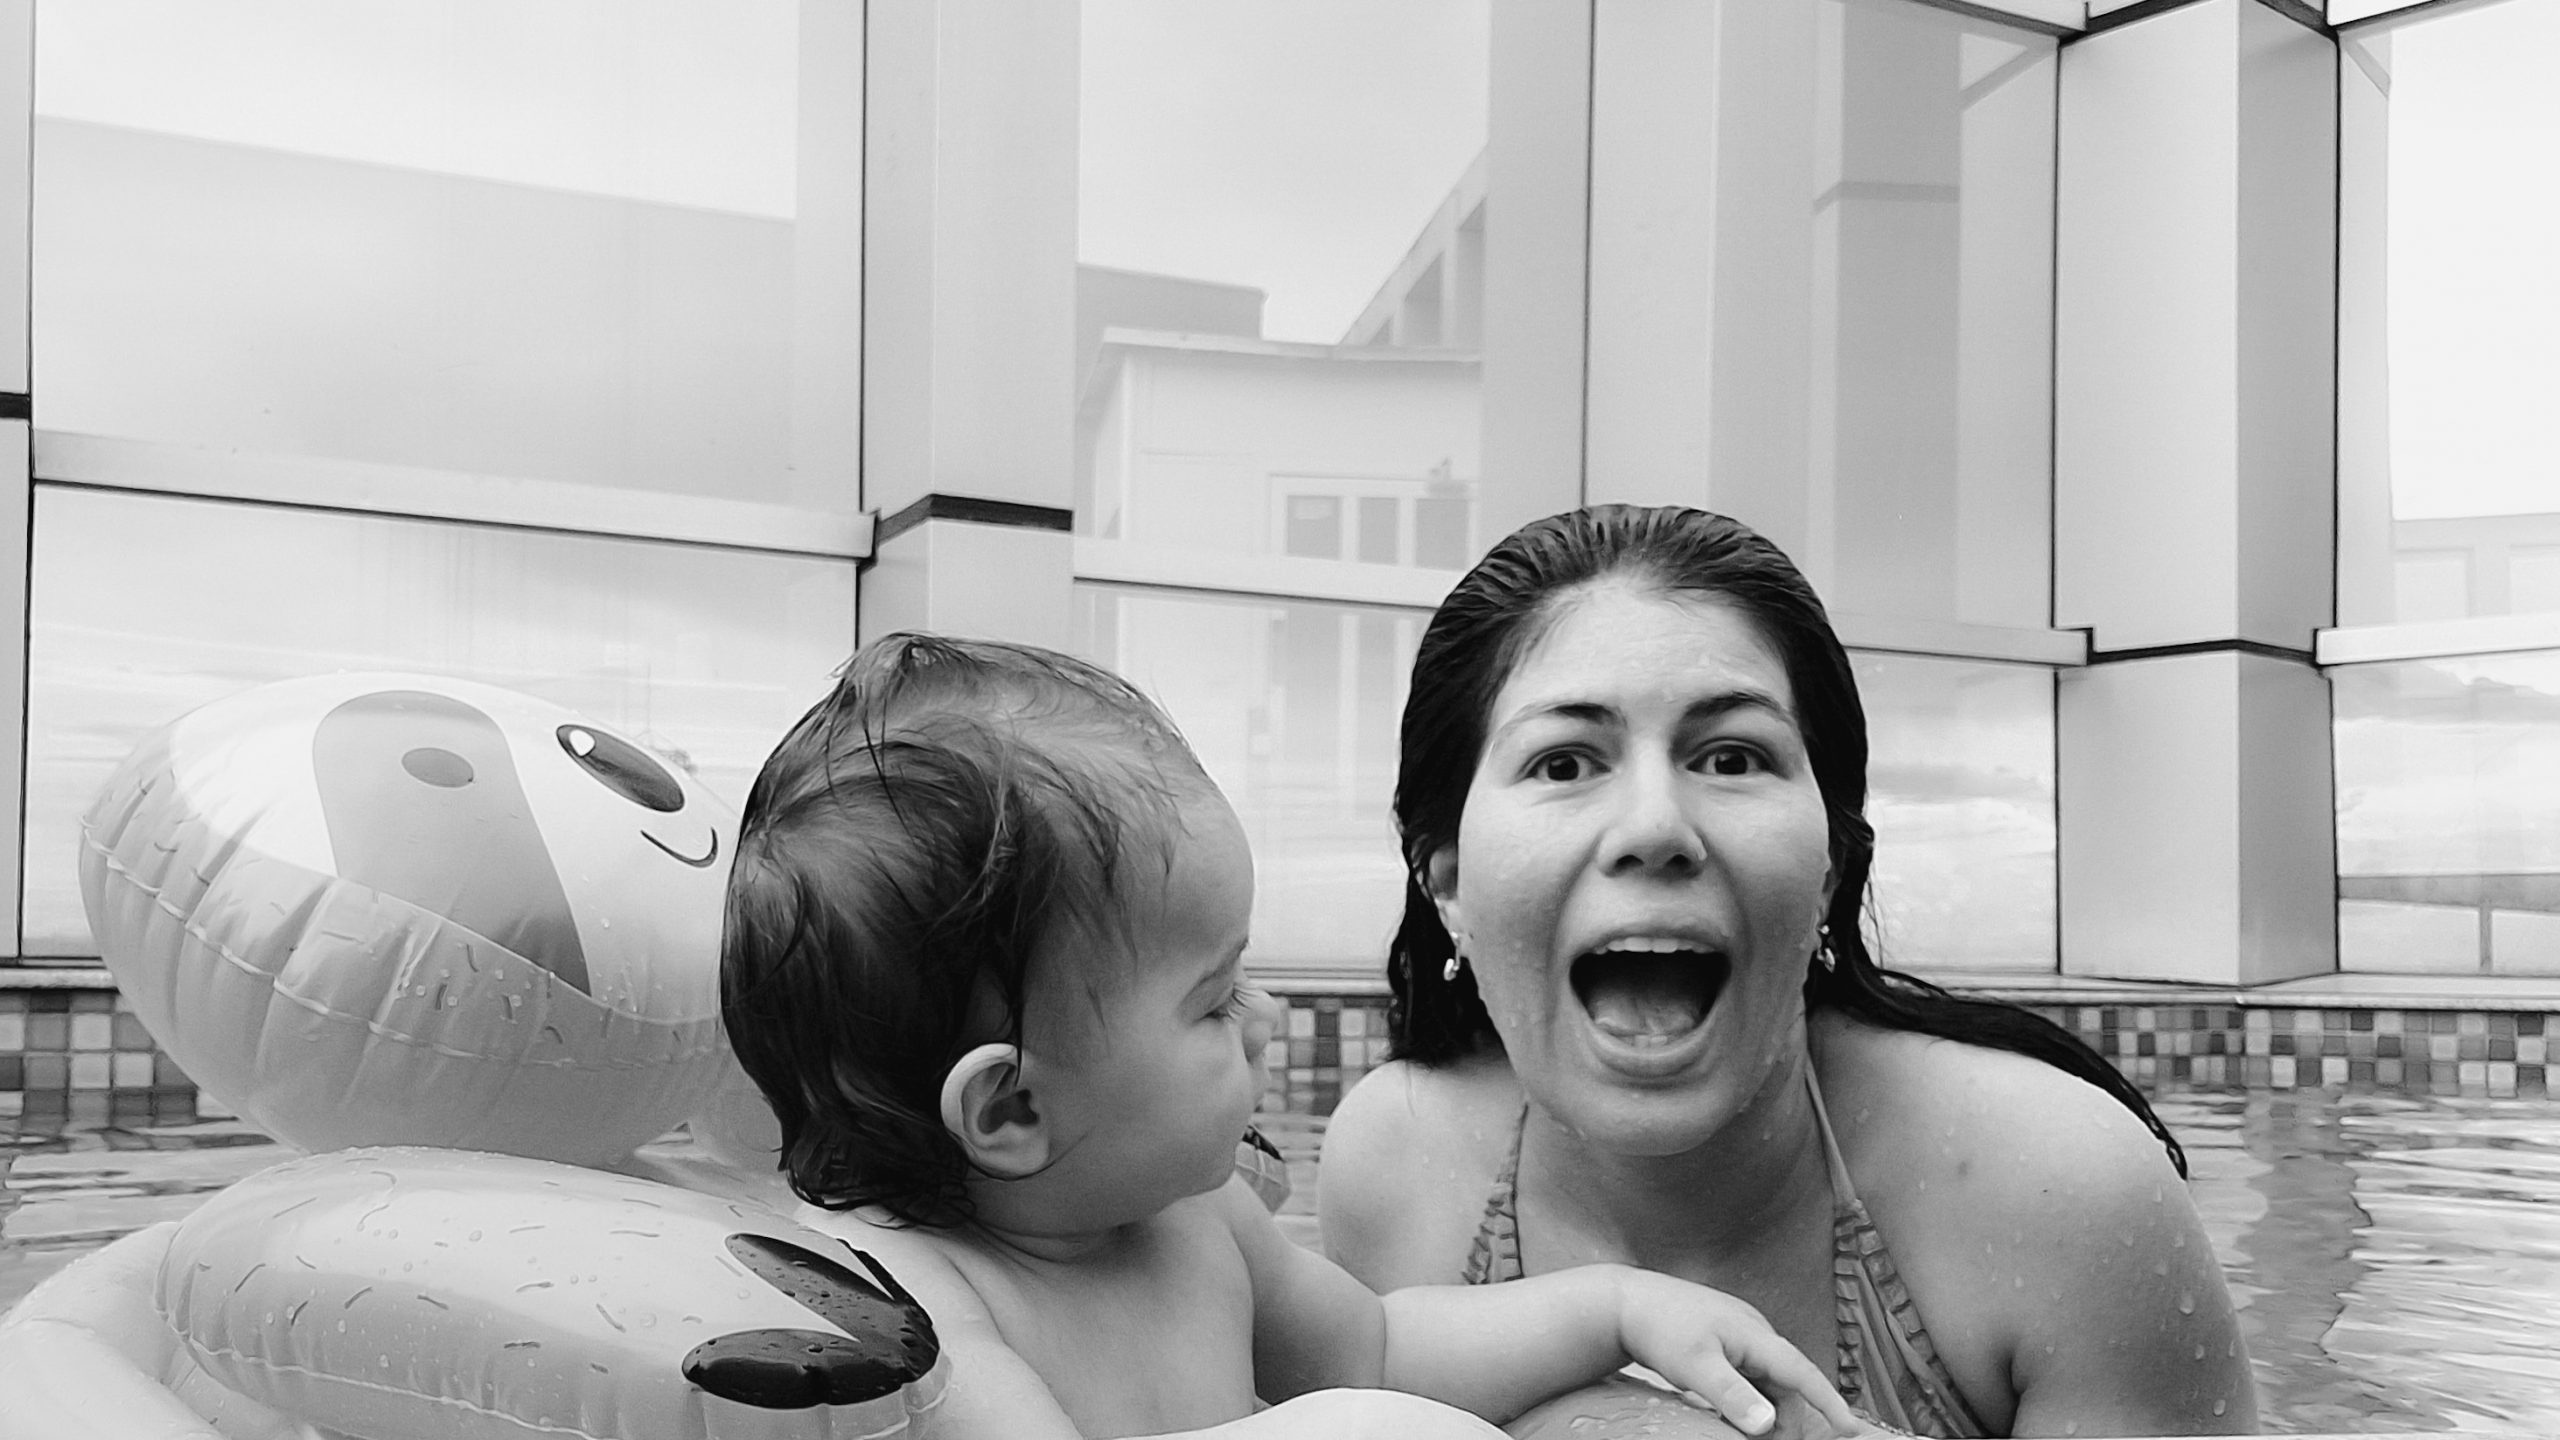 mae e bebe na piscina em preto e branco